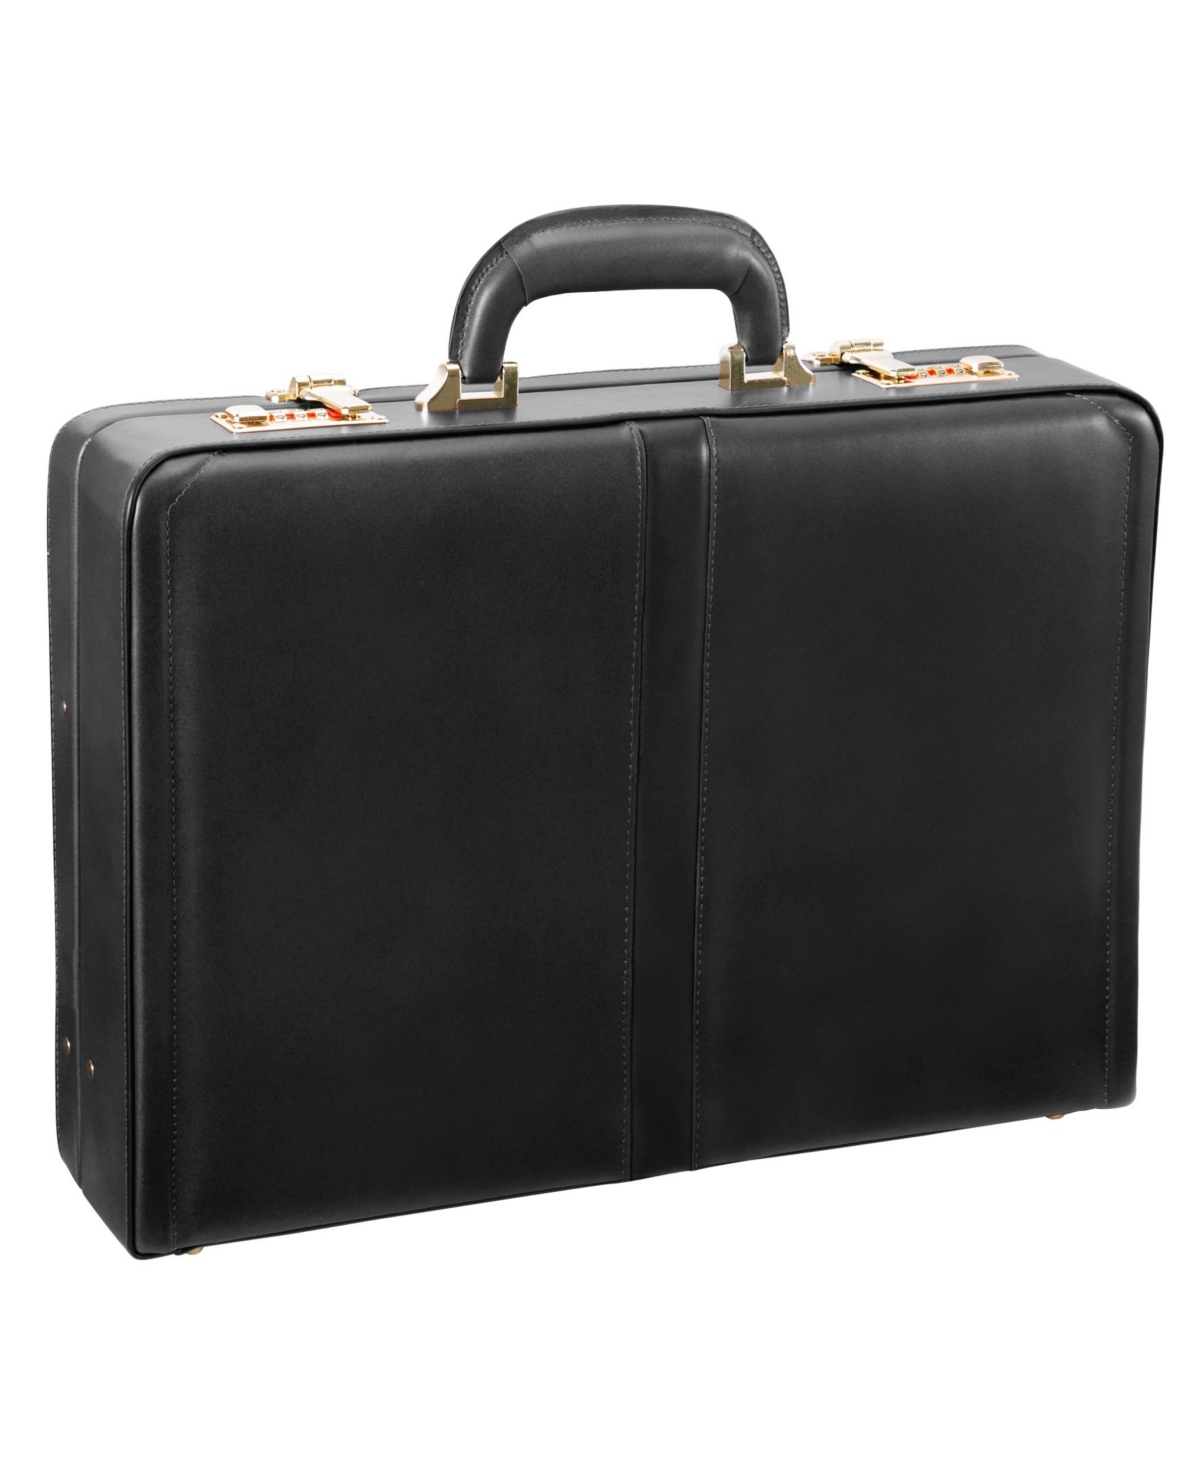 Reagan Attache Briefcase - Black